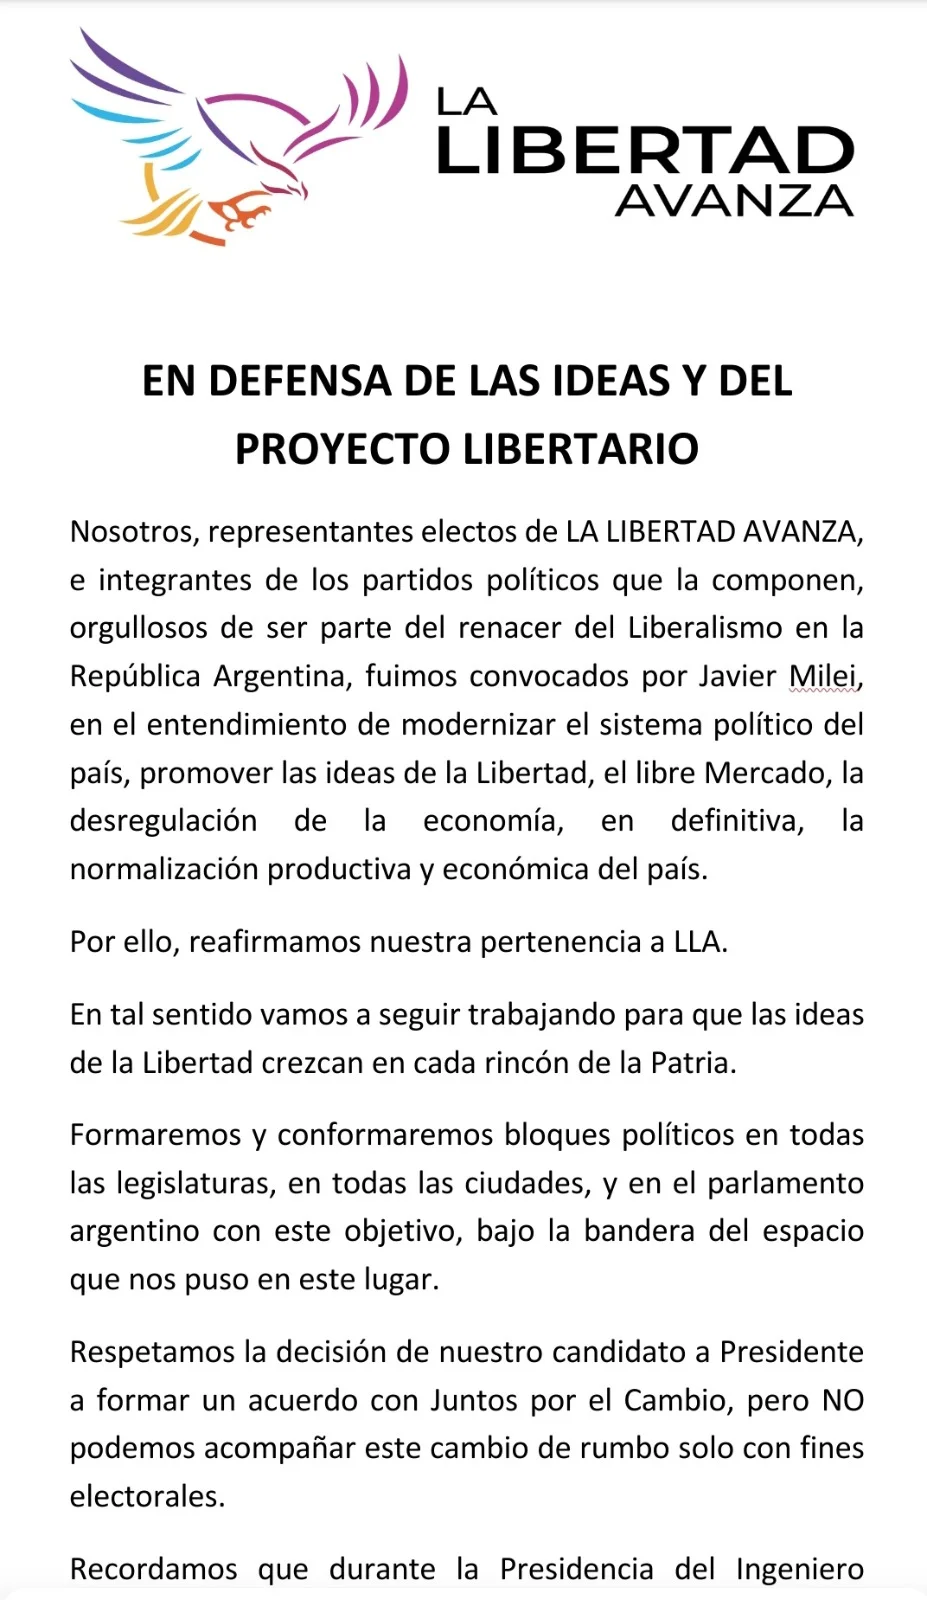 ESTALLÓ LA INTERNA LIBERTARIA: Partidos liberales retiran su apoyo a Javier Milei y se inclinan por Sergio Massa